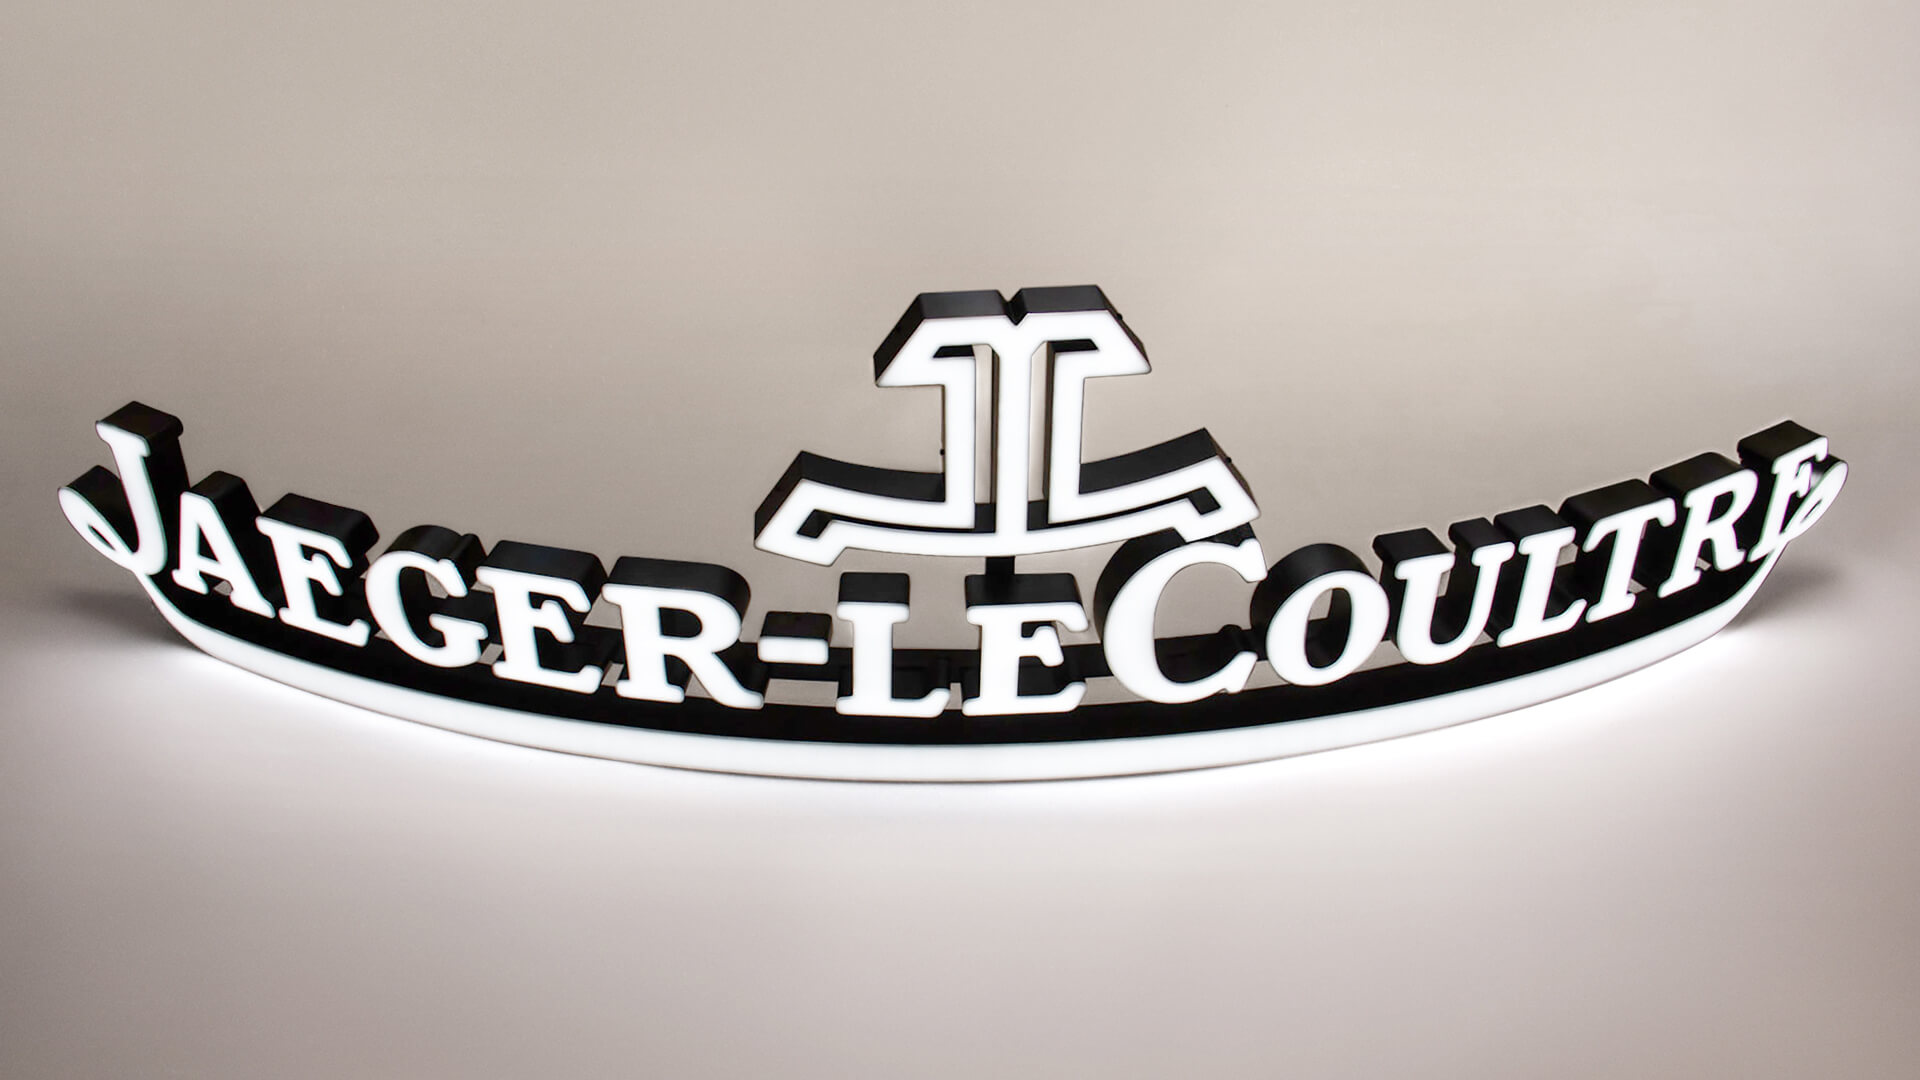 Jaeger-LeCoultre - logo frontale illuminato in bianco